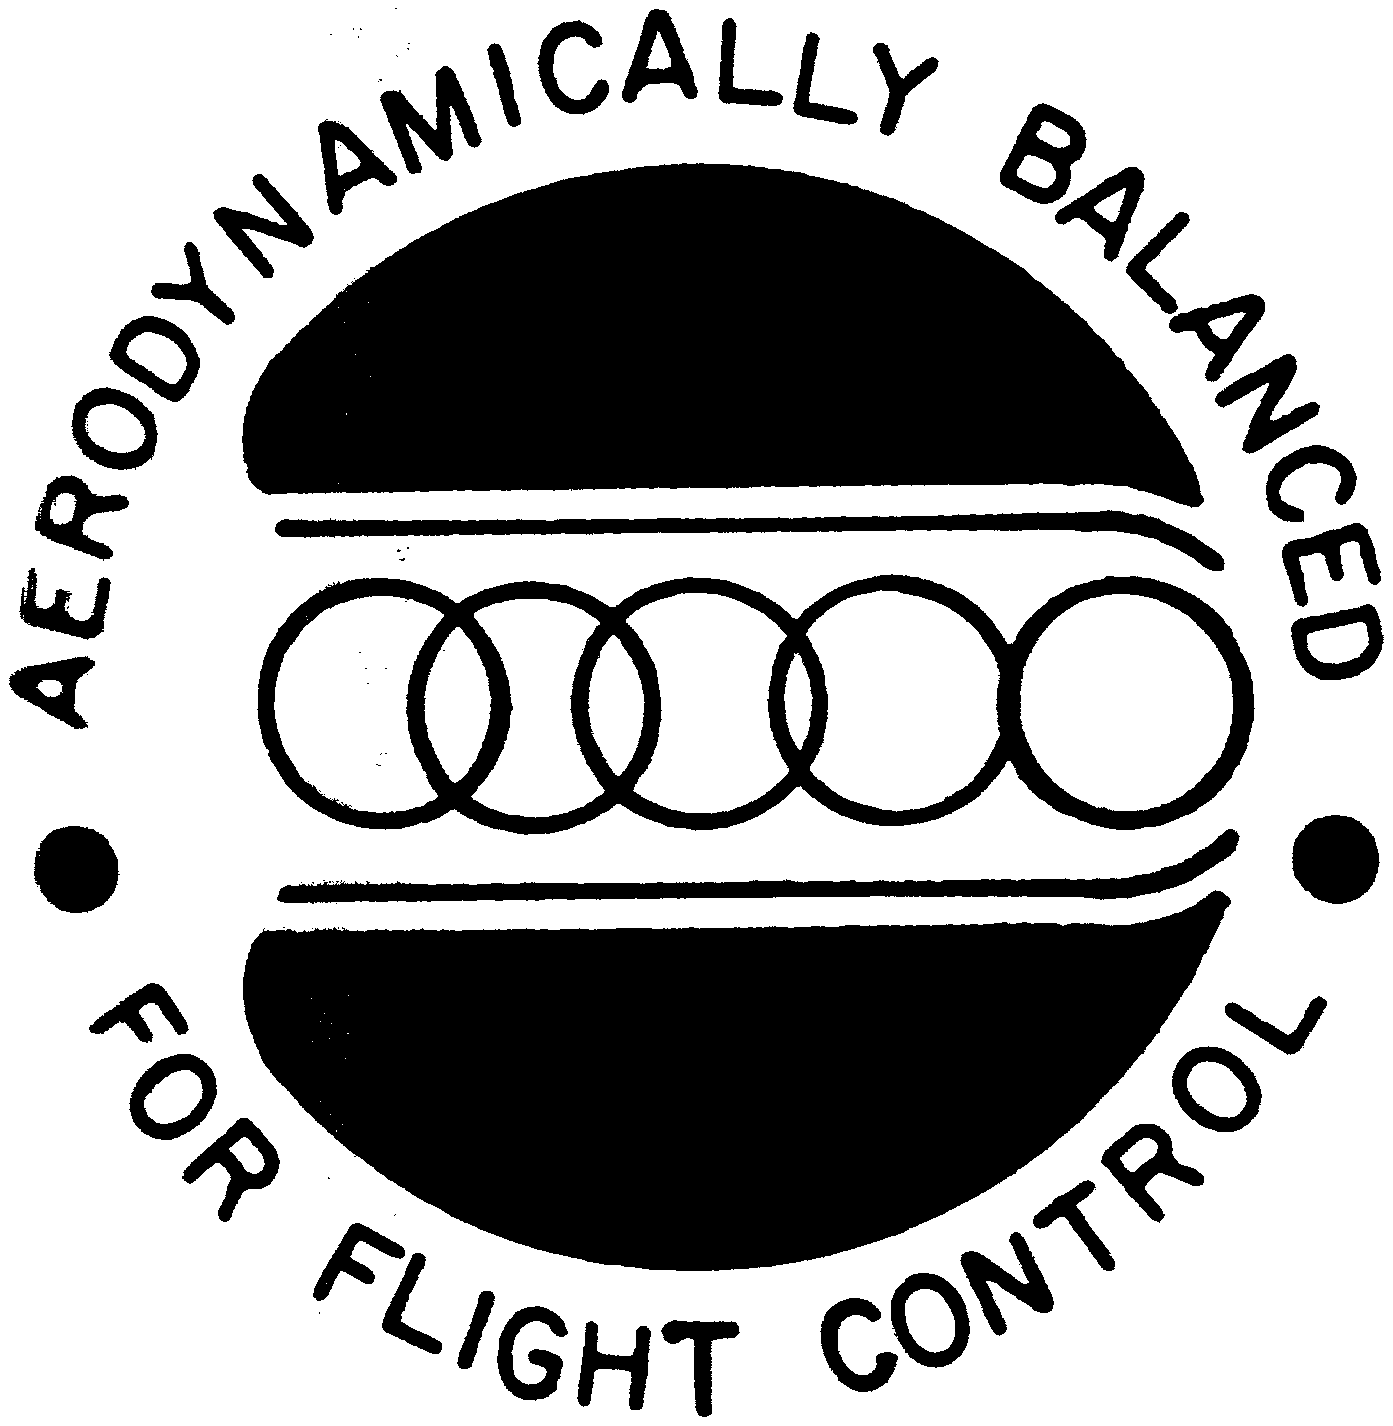  AERODYNAMICALLY BALANCED FOR FLIGHT CONTROL